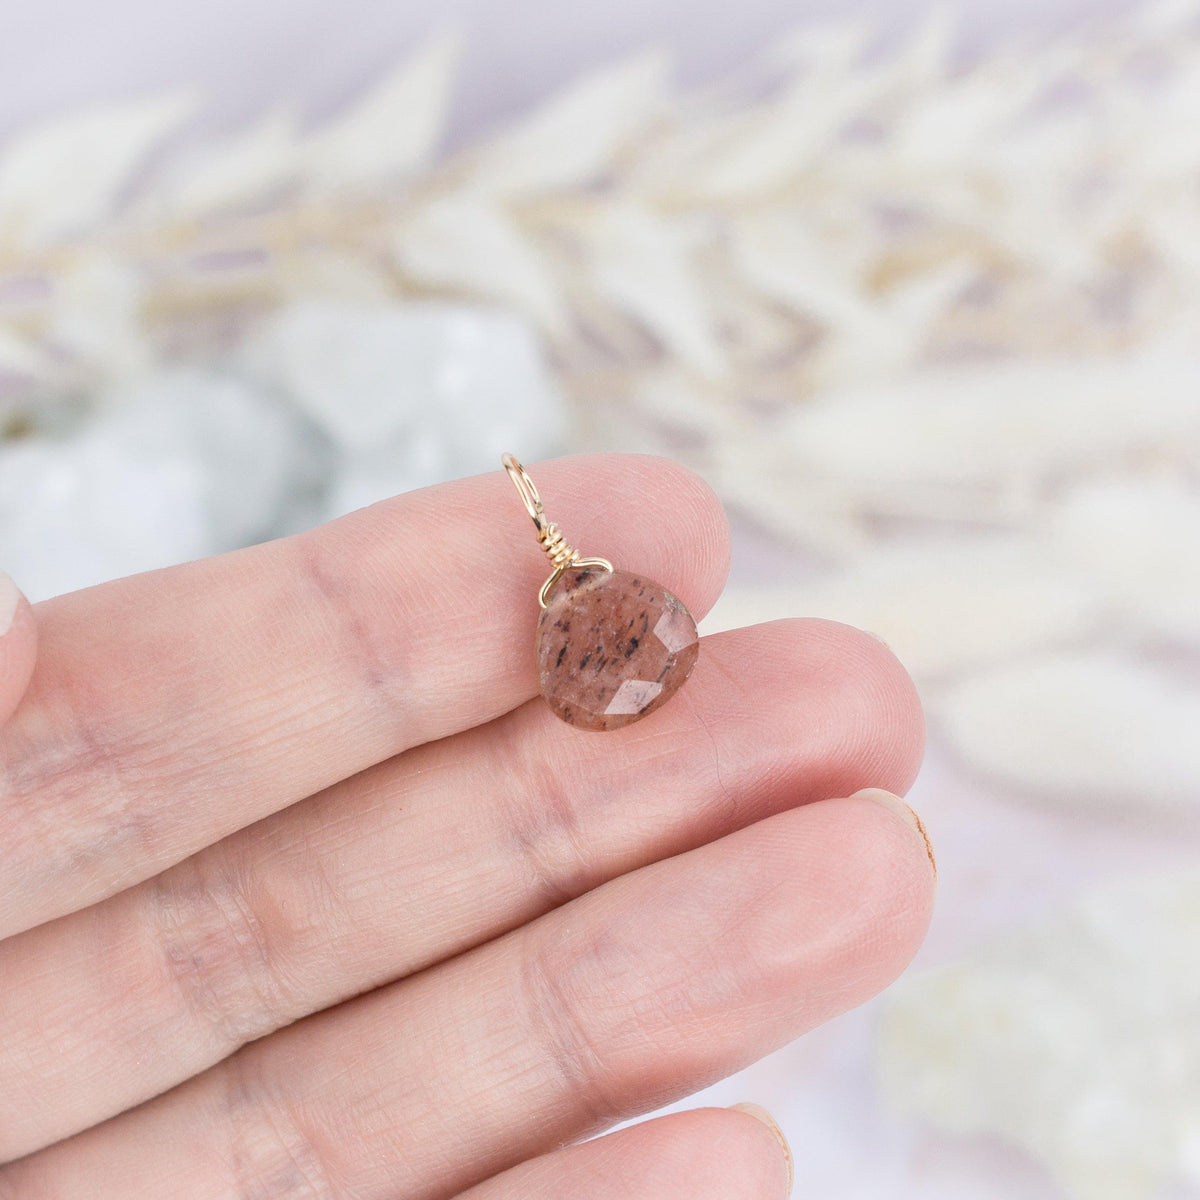 Tiny Sunstone Teardrop Gemstone Pendant - Tiny Sunstone Teardrop Gemstone Pendant - 14k Gold Fill - Luna Tide Handmade Crystal Jewellery